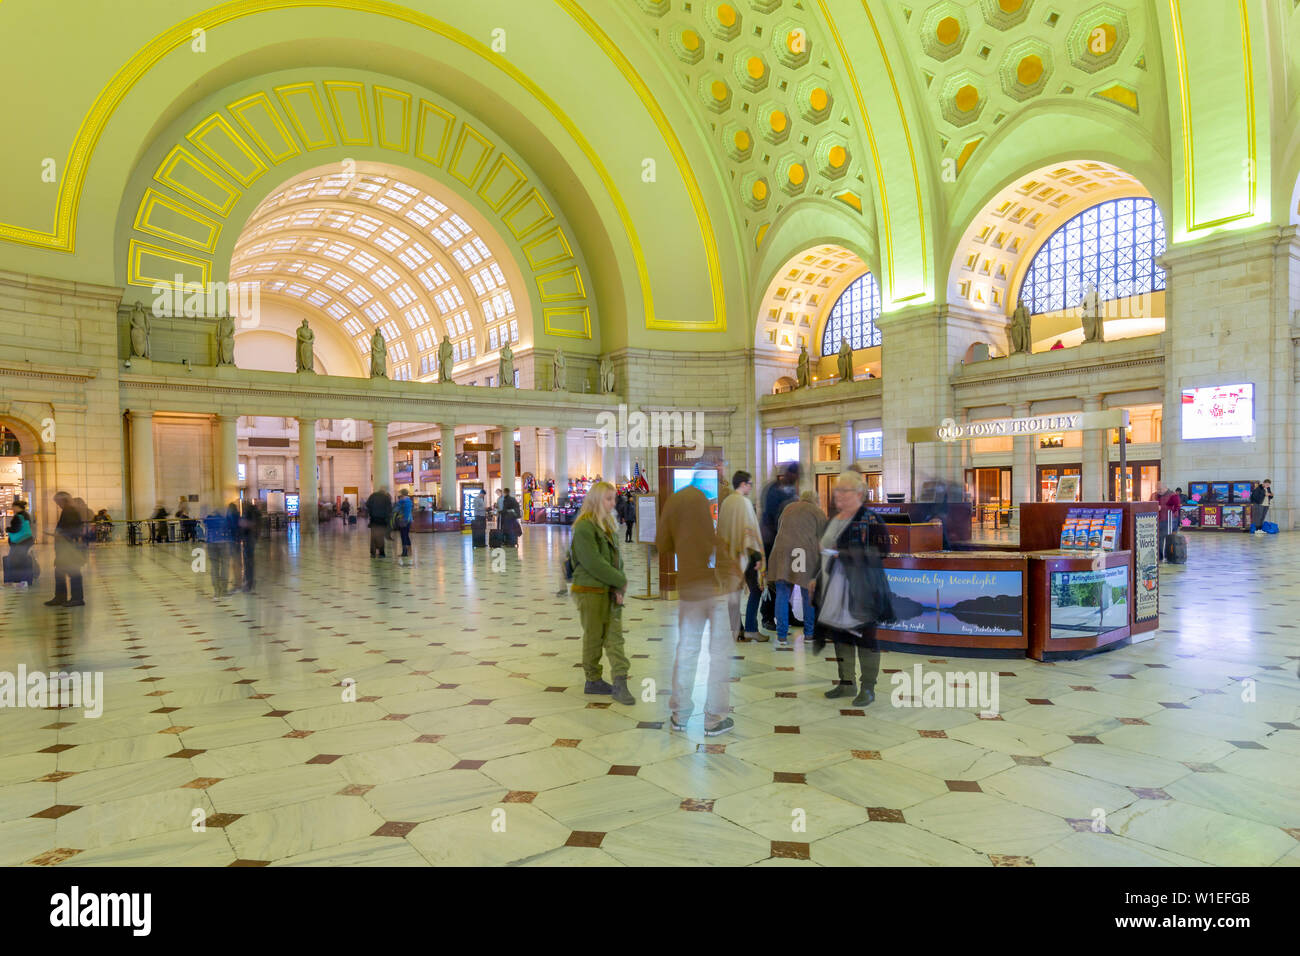 Vista del interior de la Union Station, en Washington D.C., Estados Unidos de América, América del Norte Foto de stock